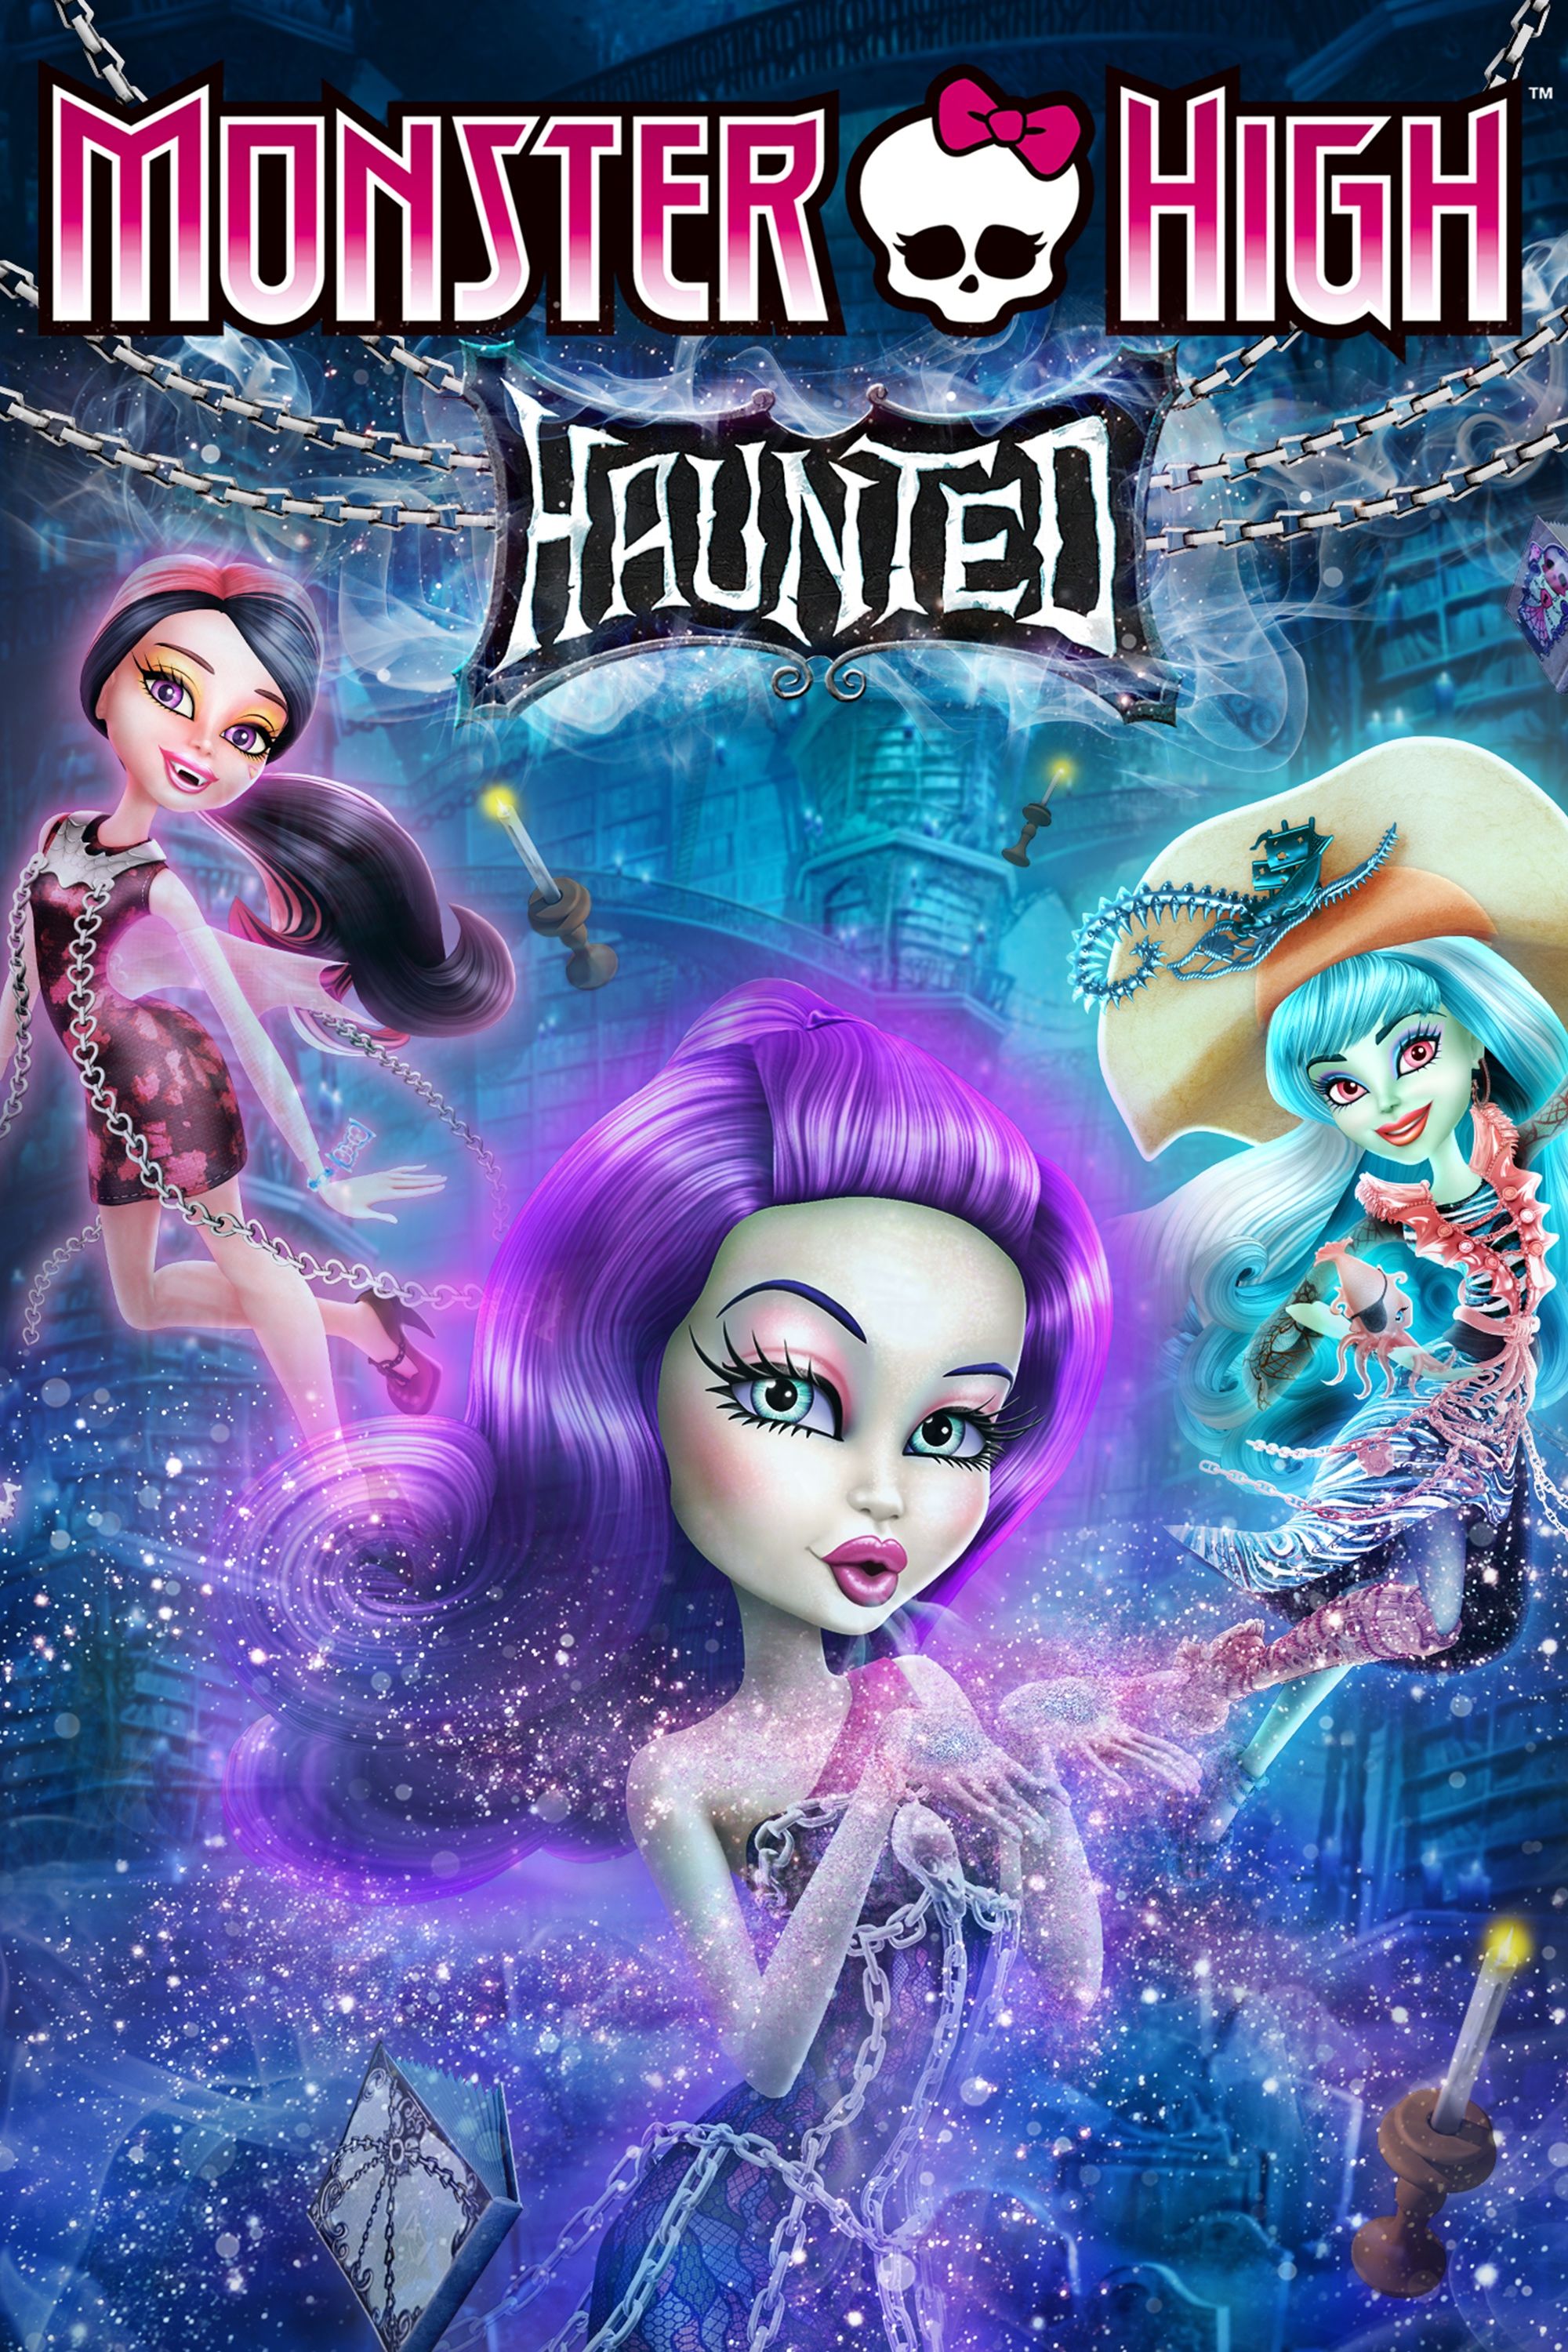 Monster High: Haunted, Full Movie